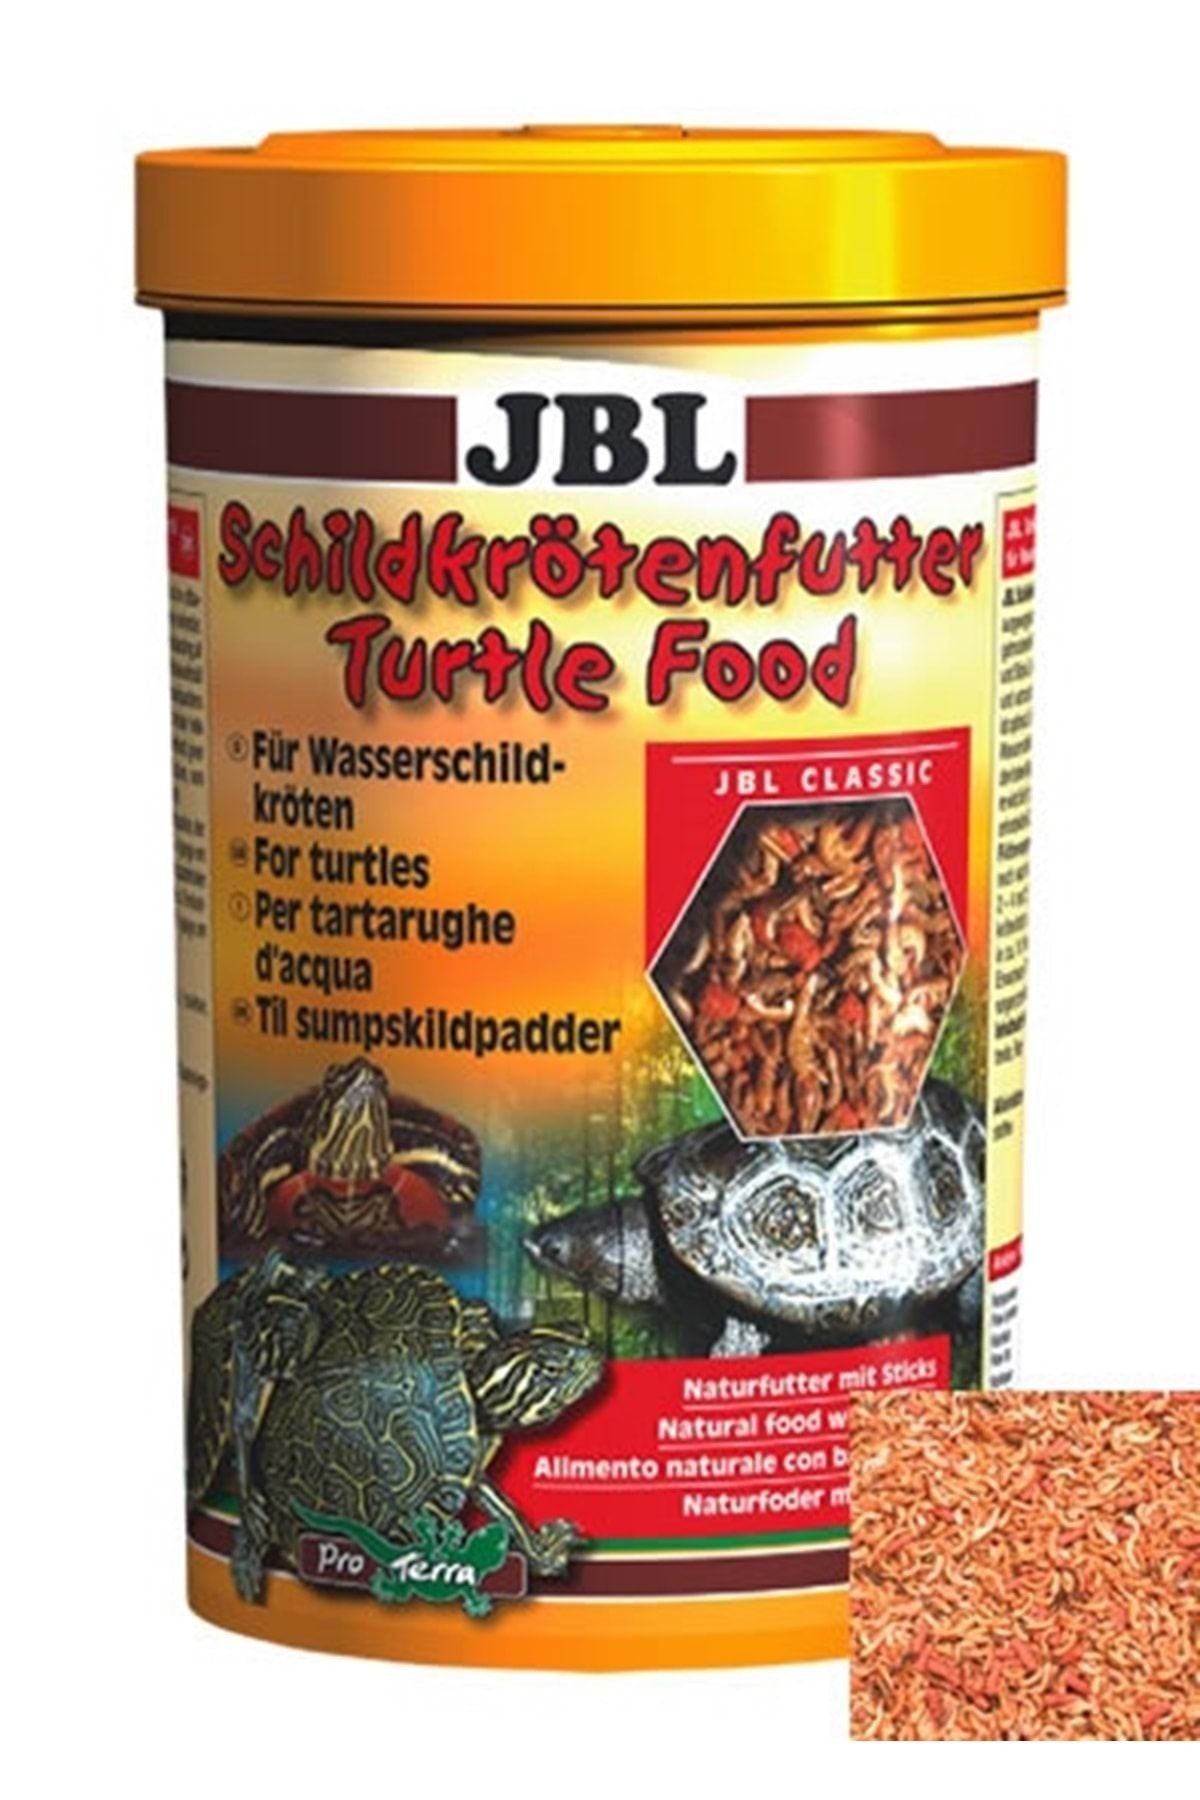 JBL Turtle Food Çubuk Kaplumbağa Yemi